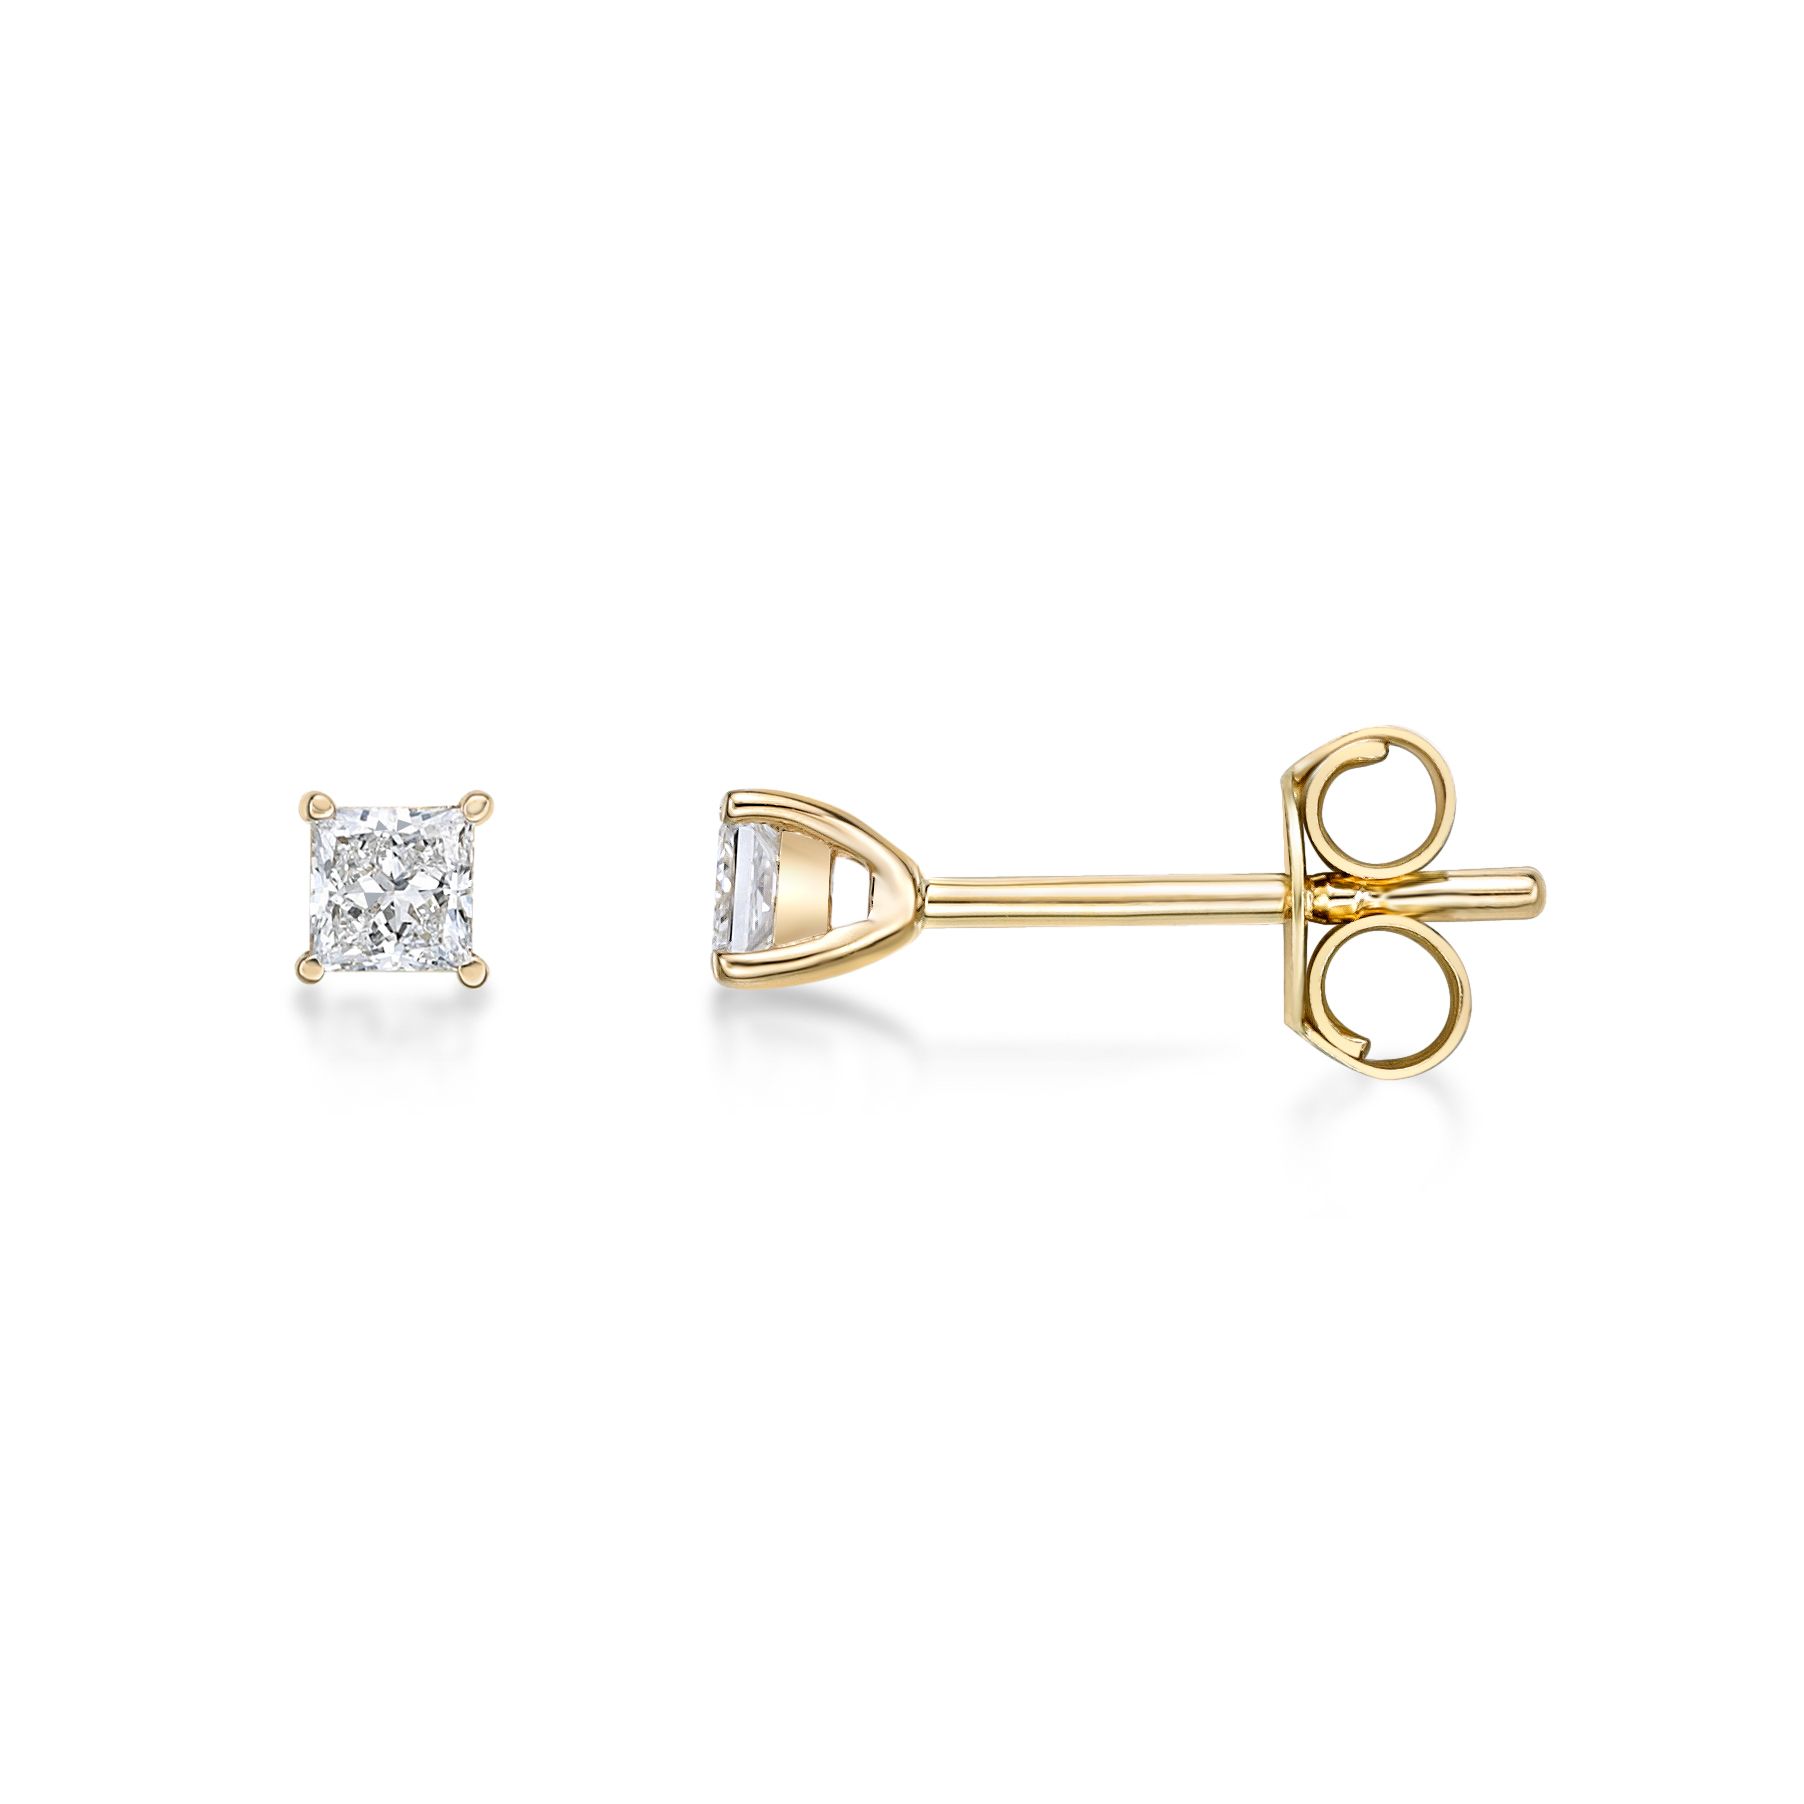 Disney Snow White Inspired Bow Diamond Earrings 1/10 CTTW